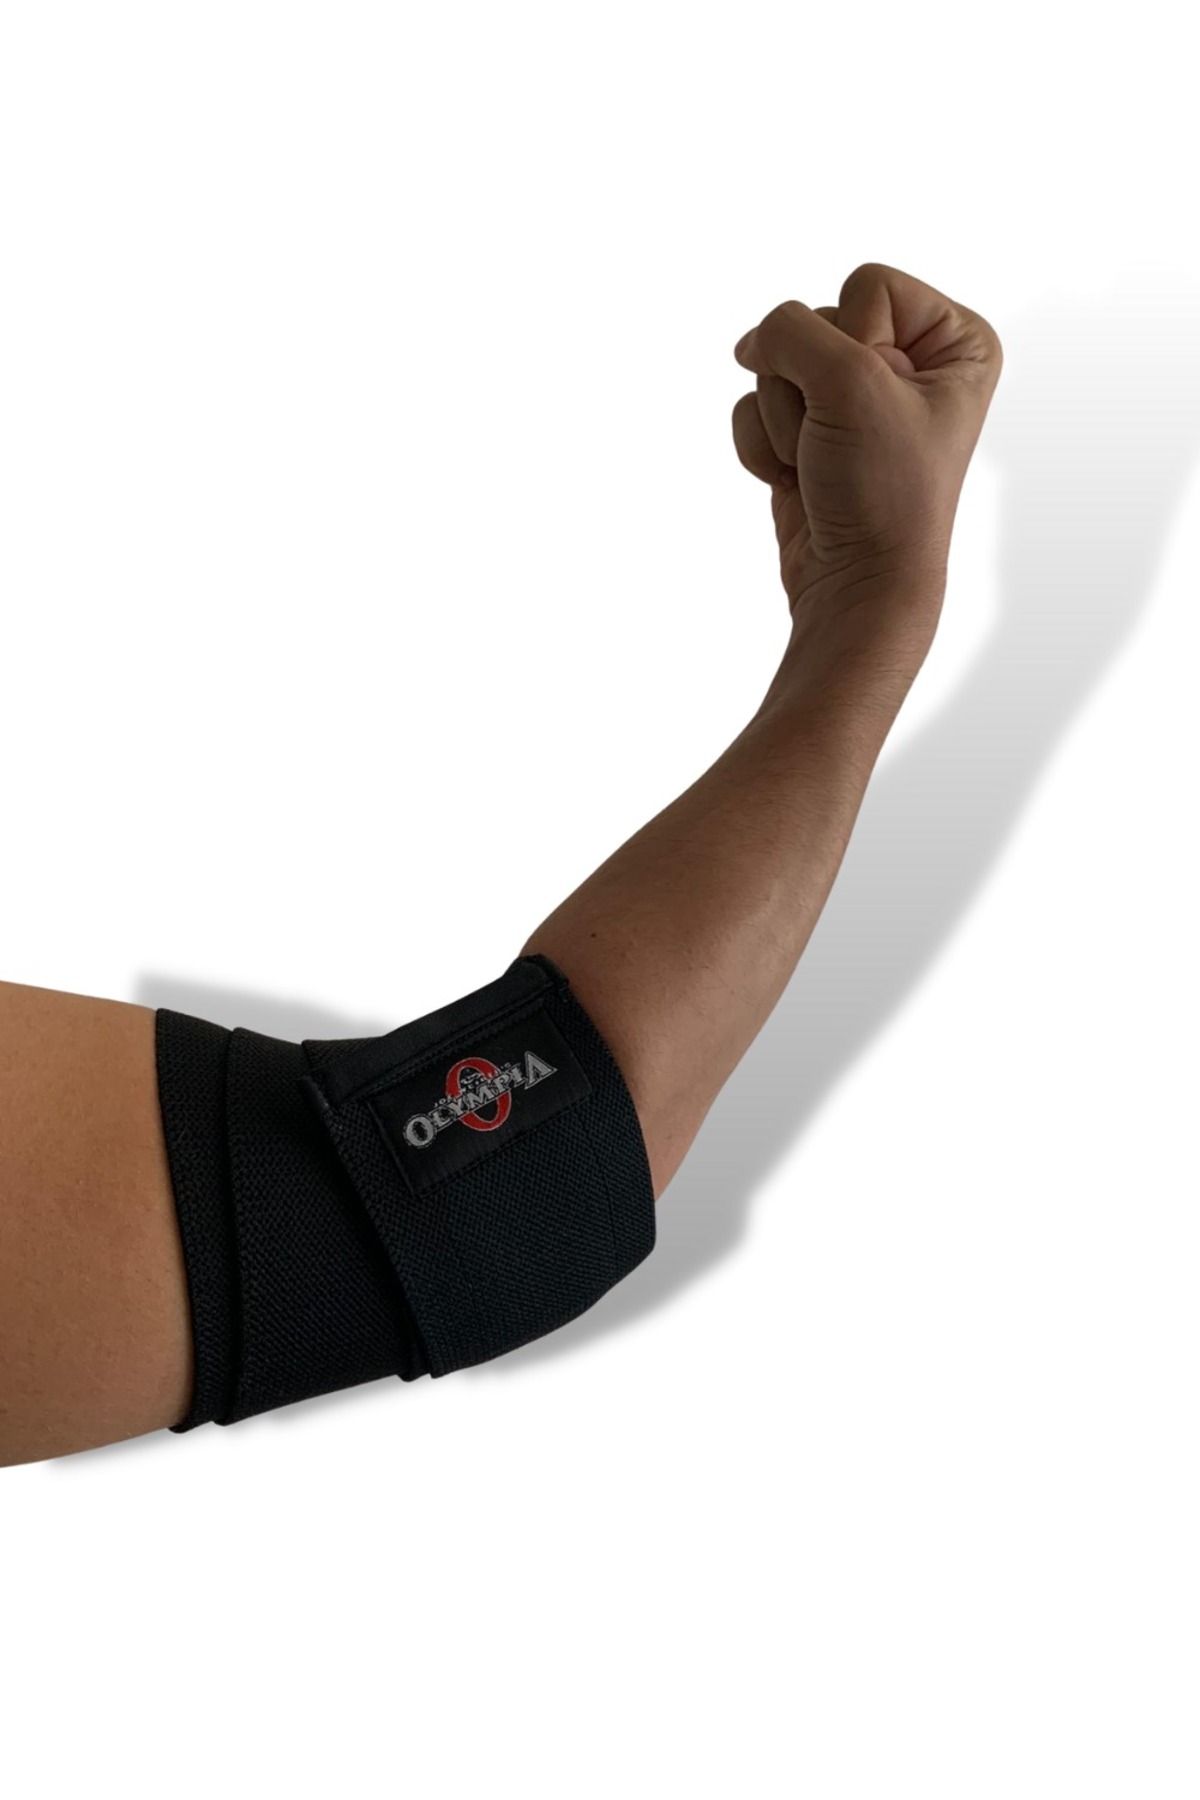 DSport Elbow Sleeve , Fitness Spor Dirseklik , Ortopedik Antrenman Dirsekliği, Unisex 2’li Paket Sarmalı